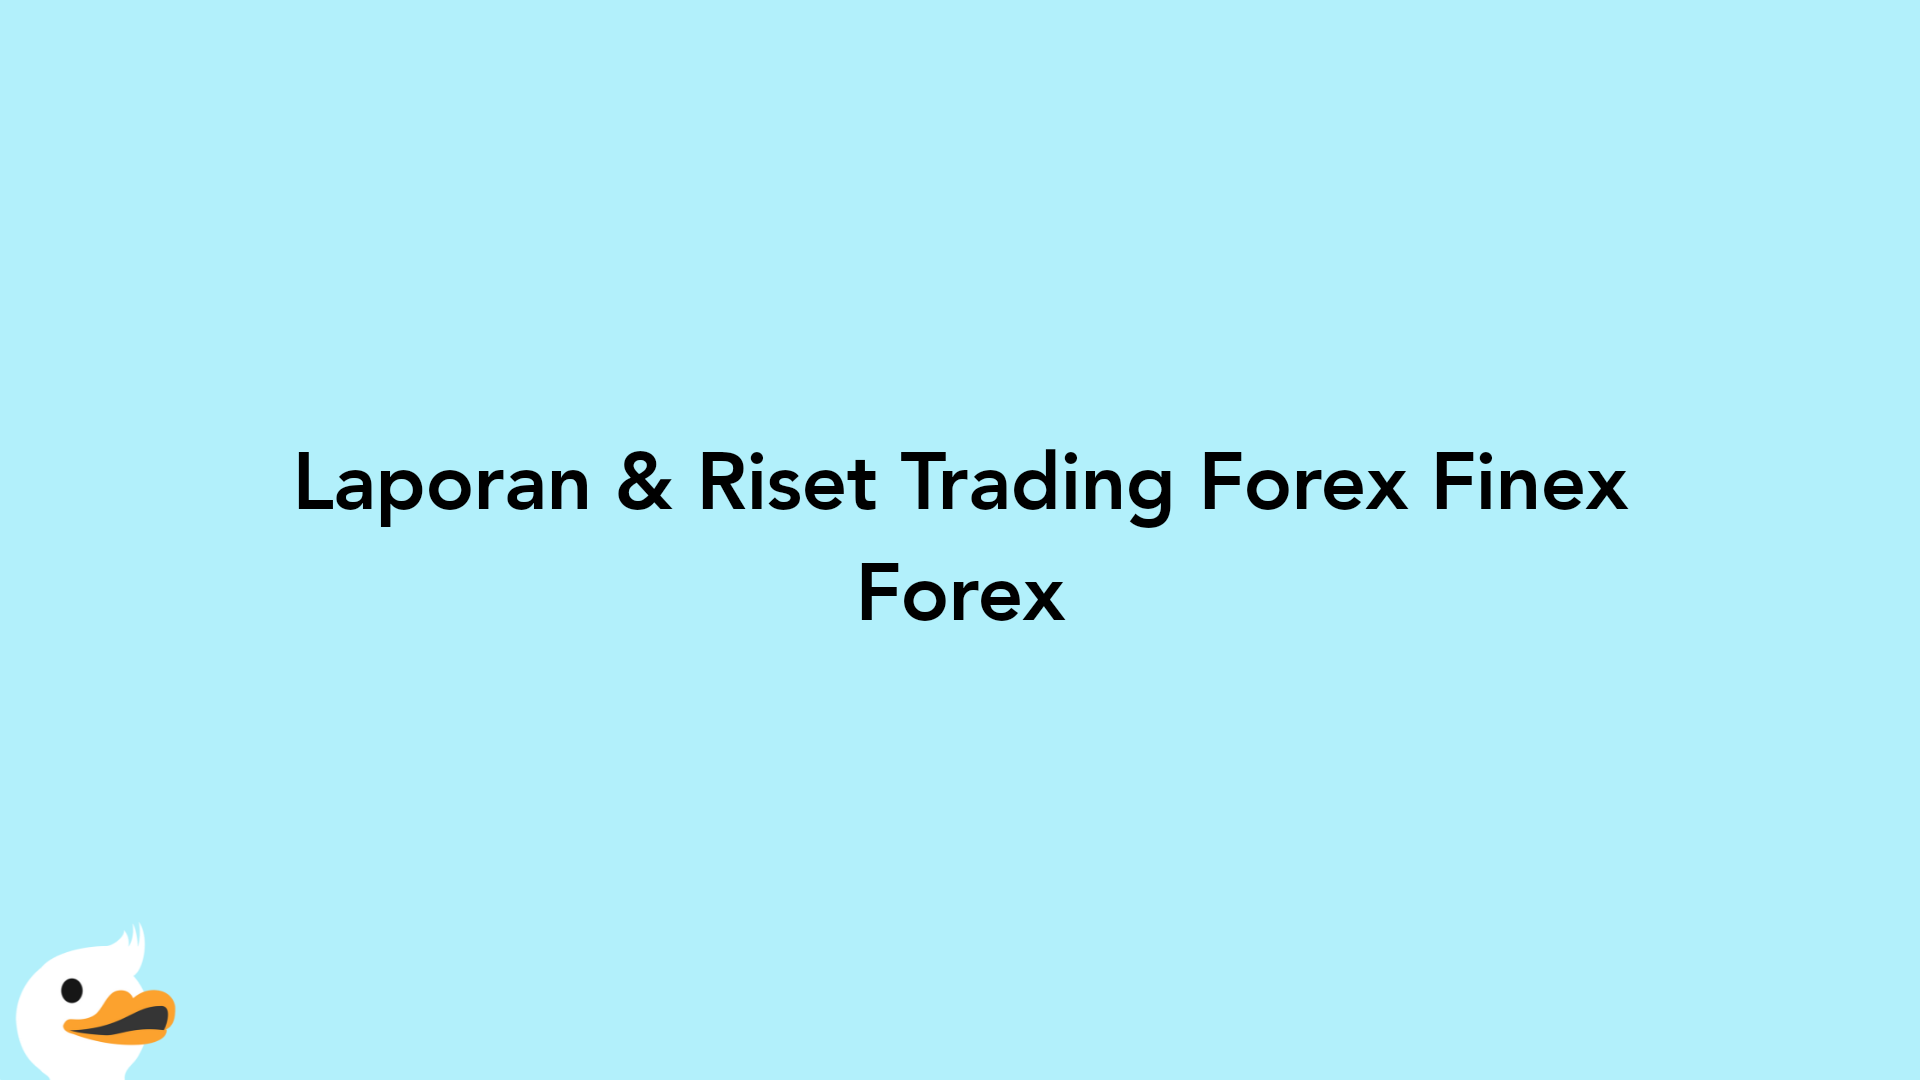 Laporan & Riset Trading Forex Finex Forex